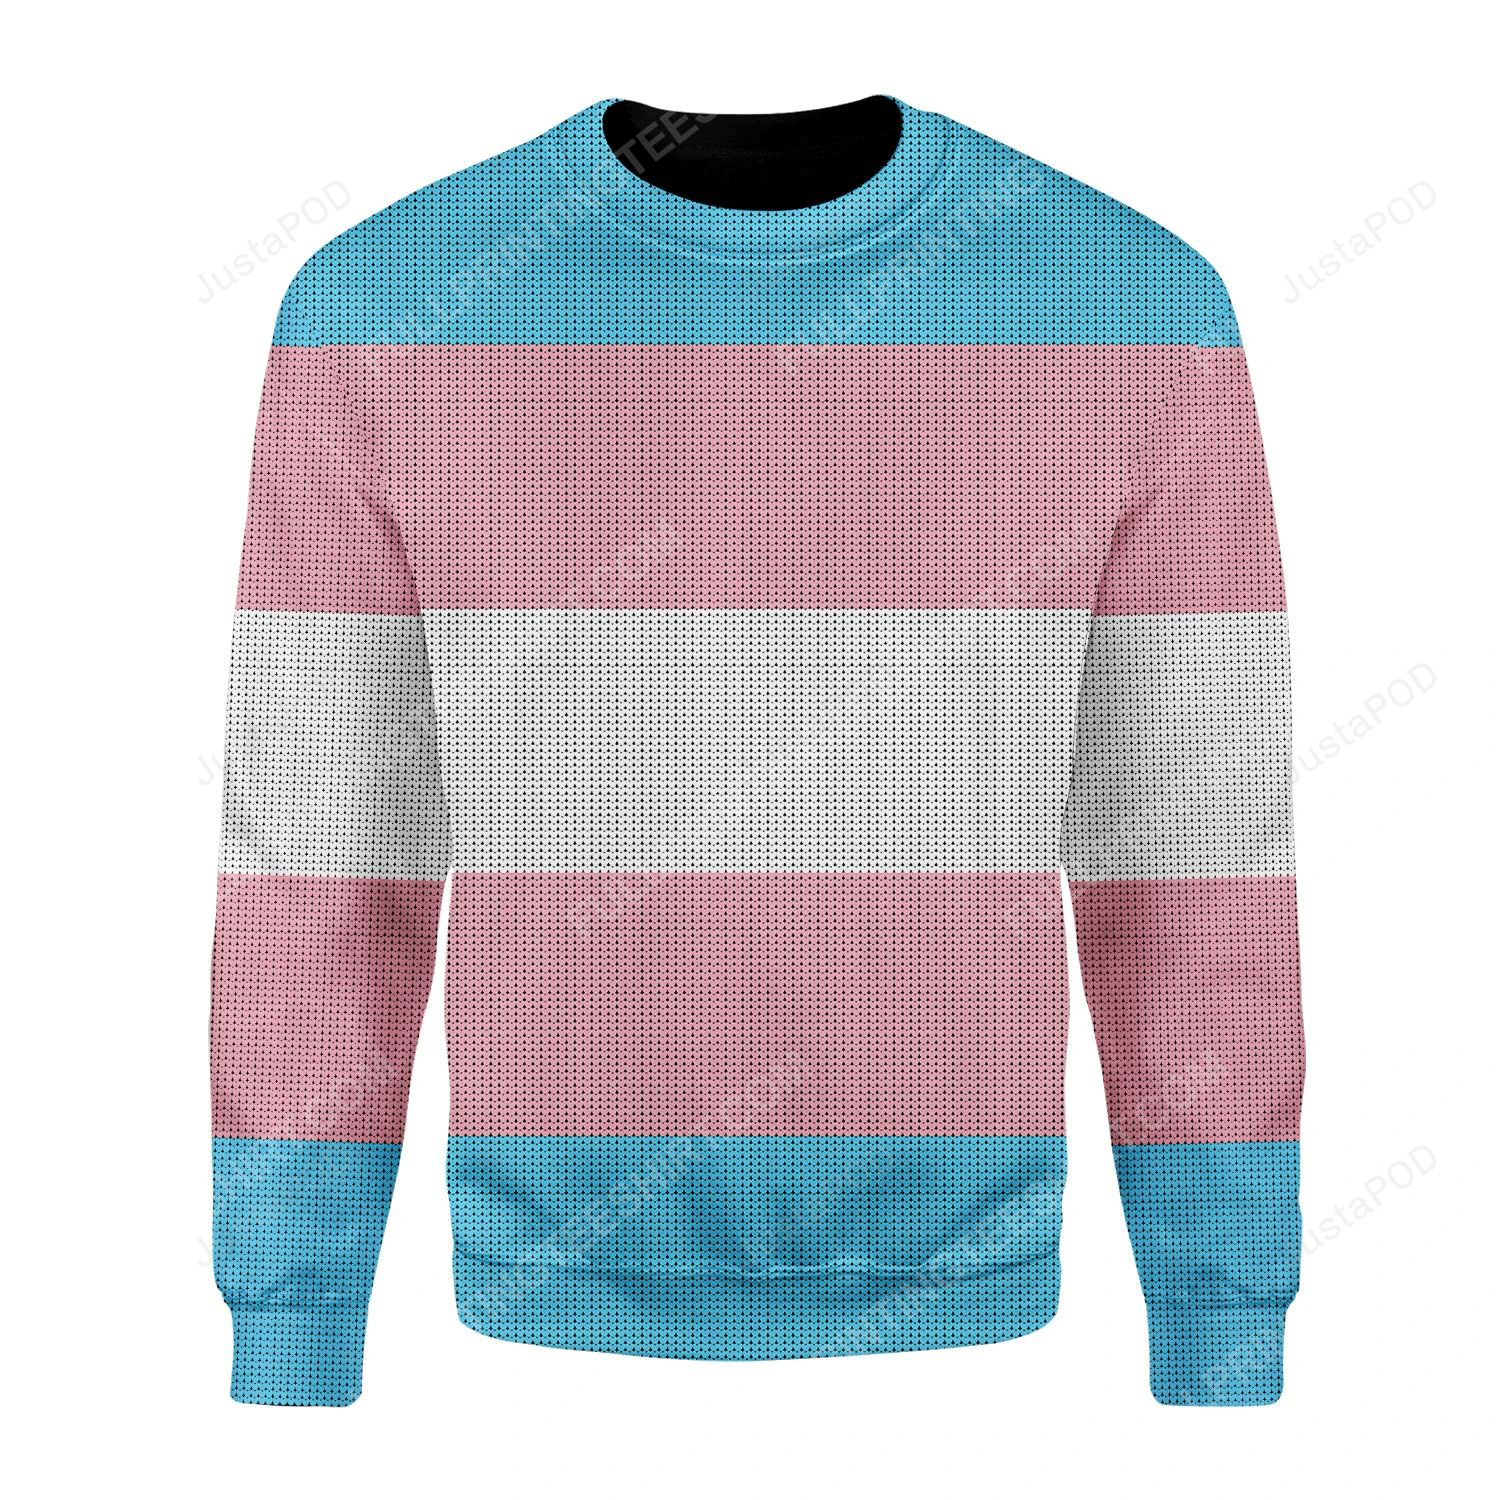 Transgender flag christmas gift ugly christmas sweater